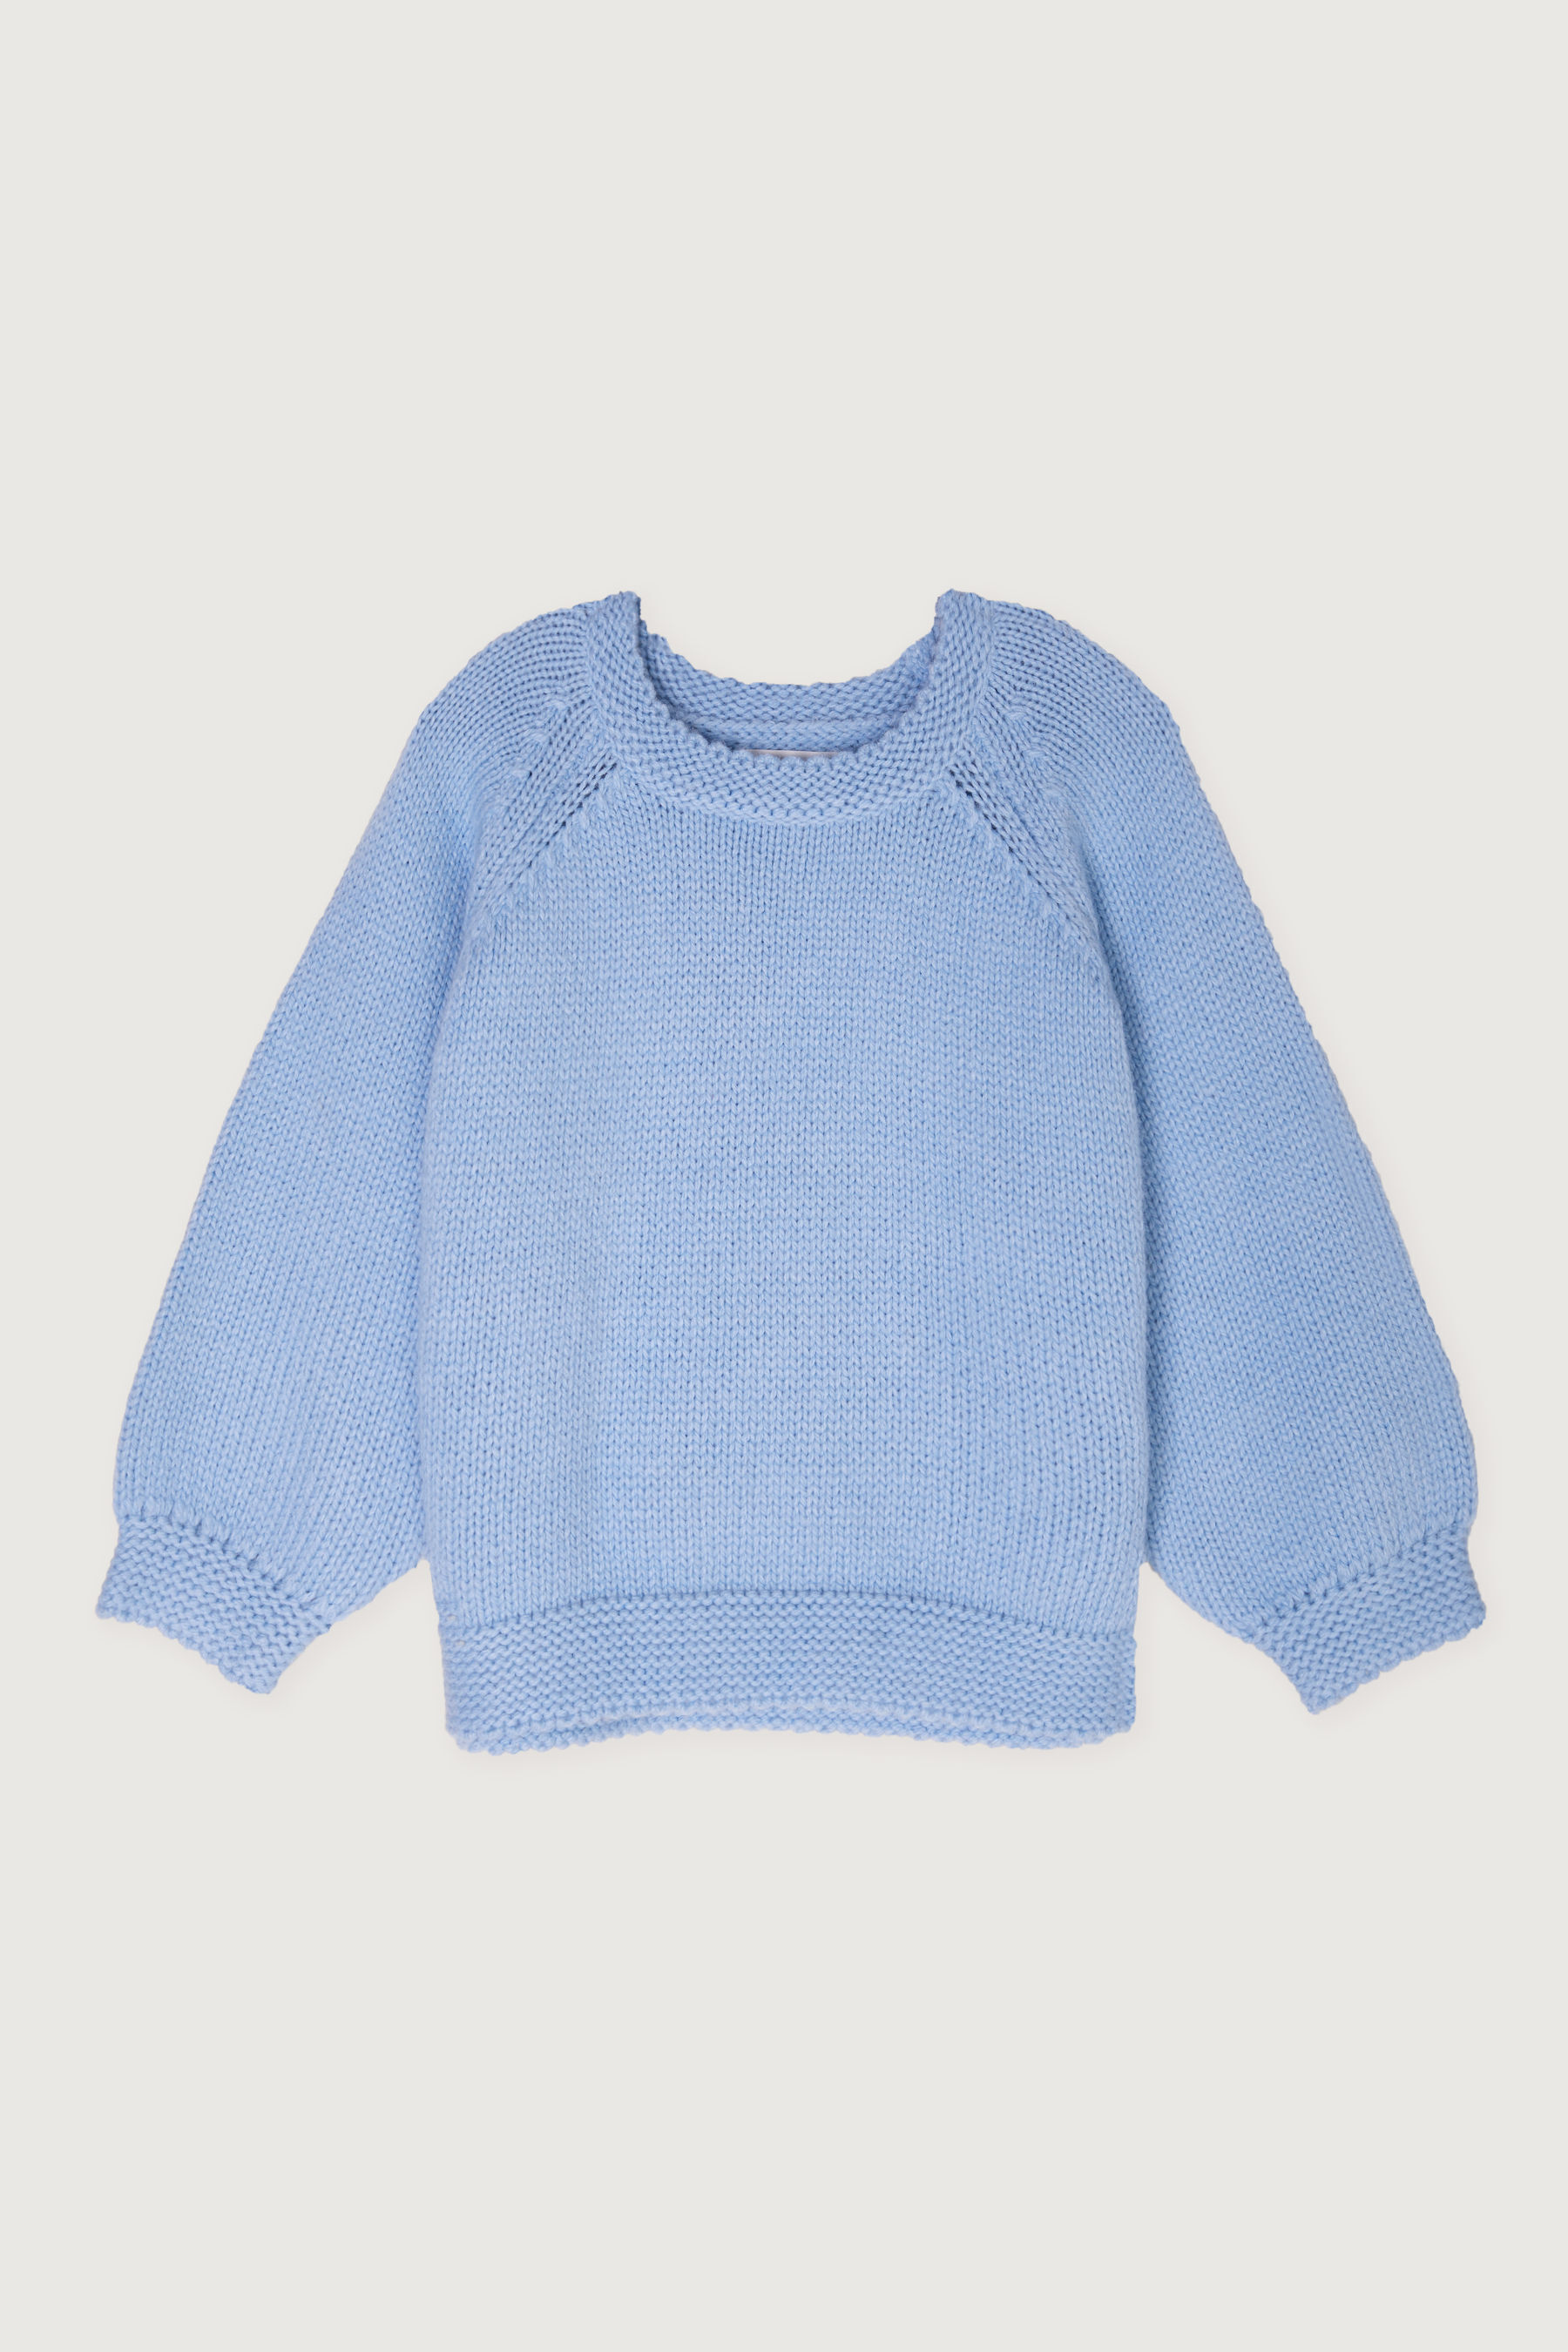 Sweater 3992 | OAK + FORT